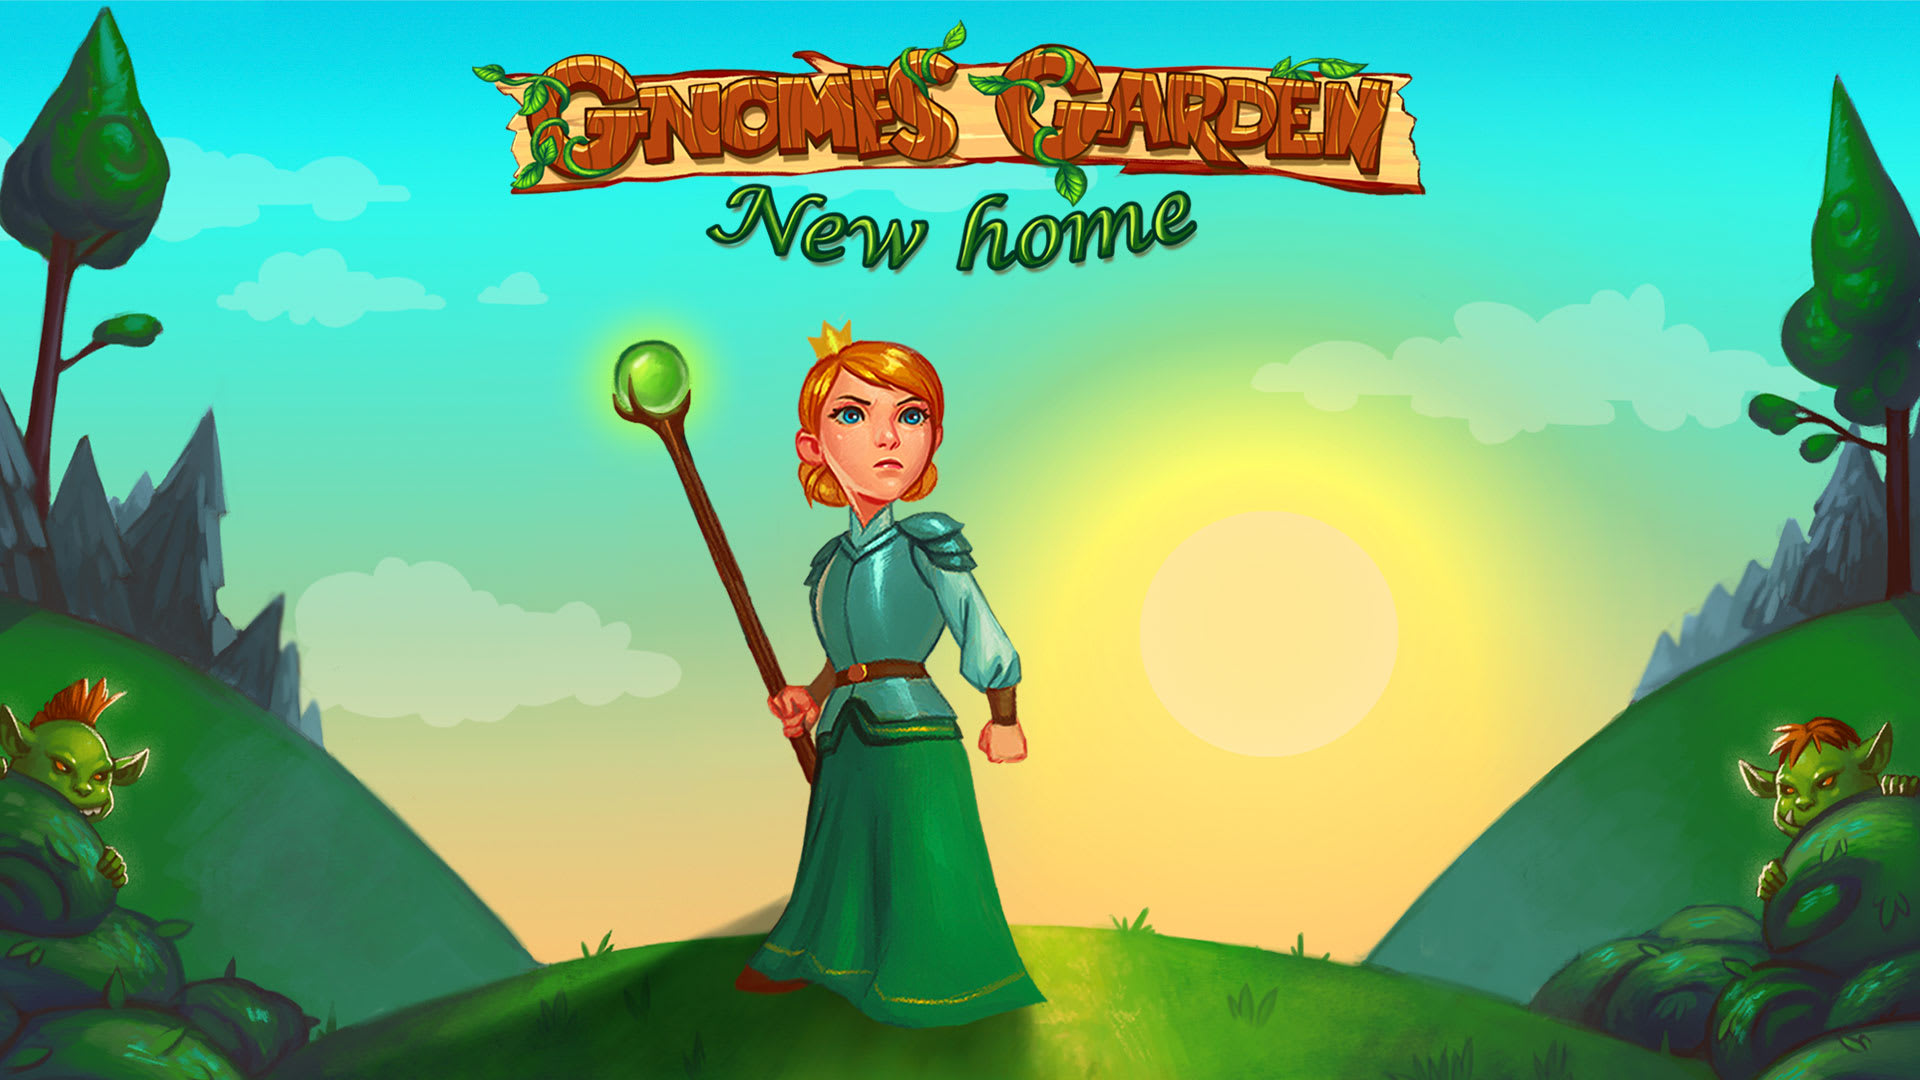 Gnomes Garden: New Home